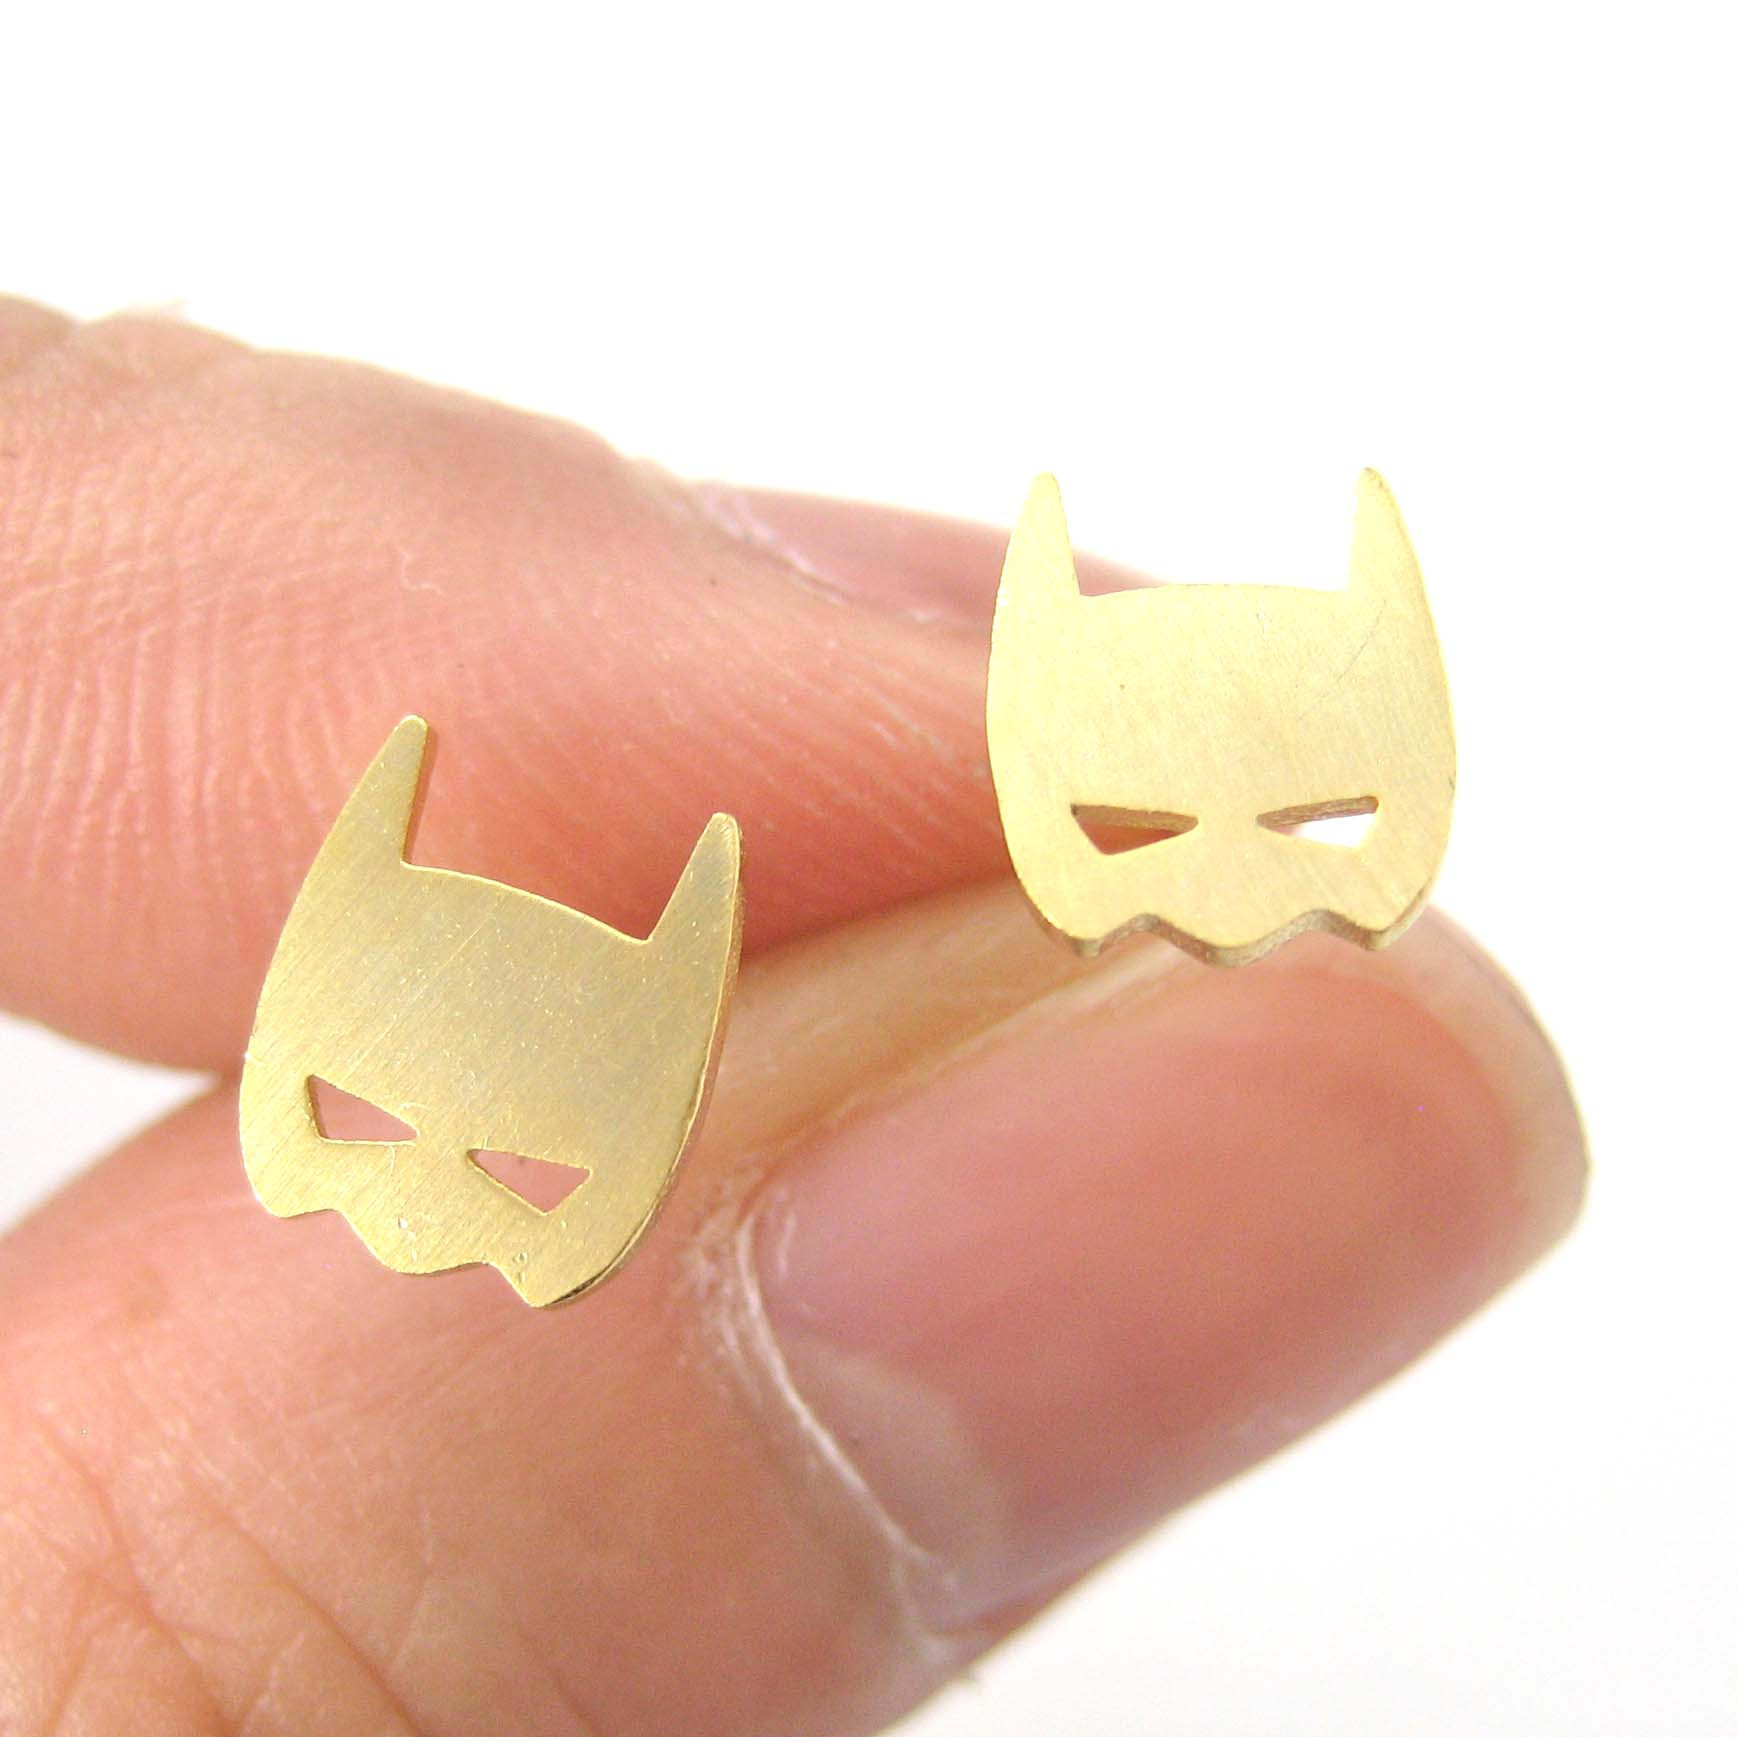 Allergy Free Earrings
 Batman Bat Mask Shaped Stud Earrings in Gold